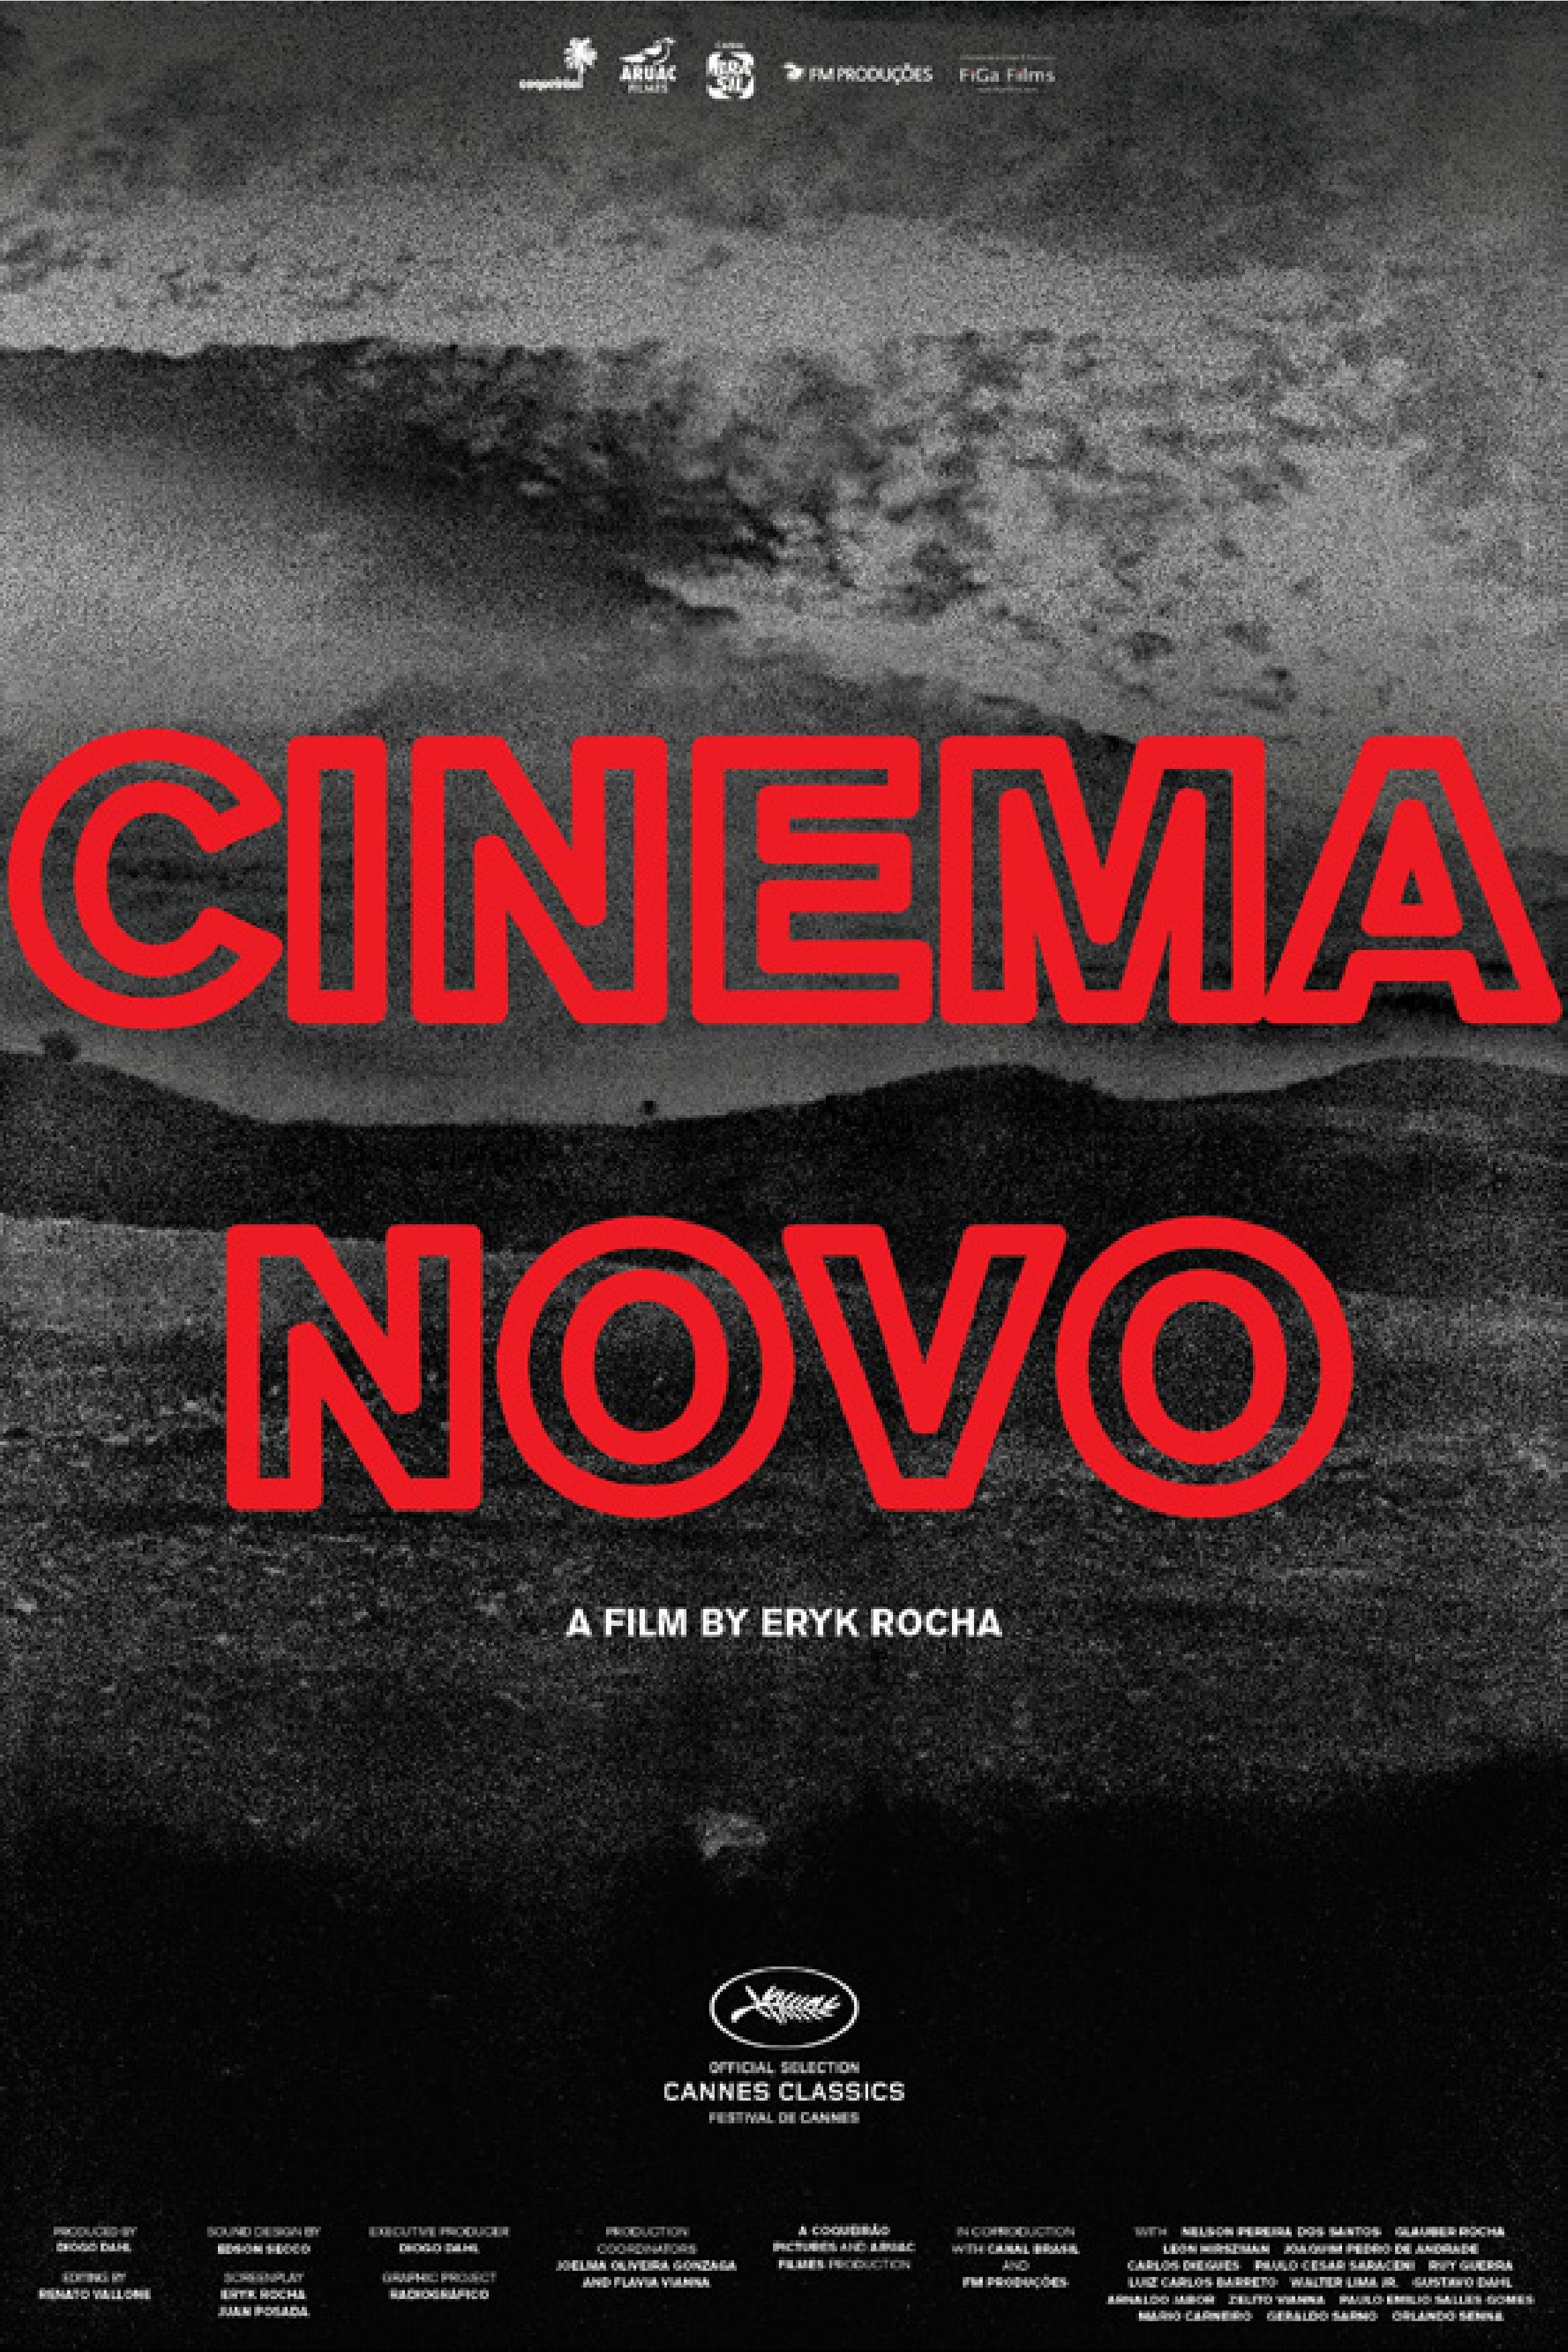 Nonton film Cinema Novo layarkaca21 indoxx1 ganool online streaming terbaru